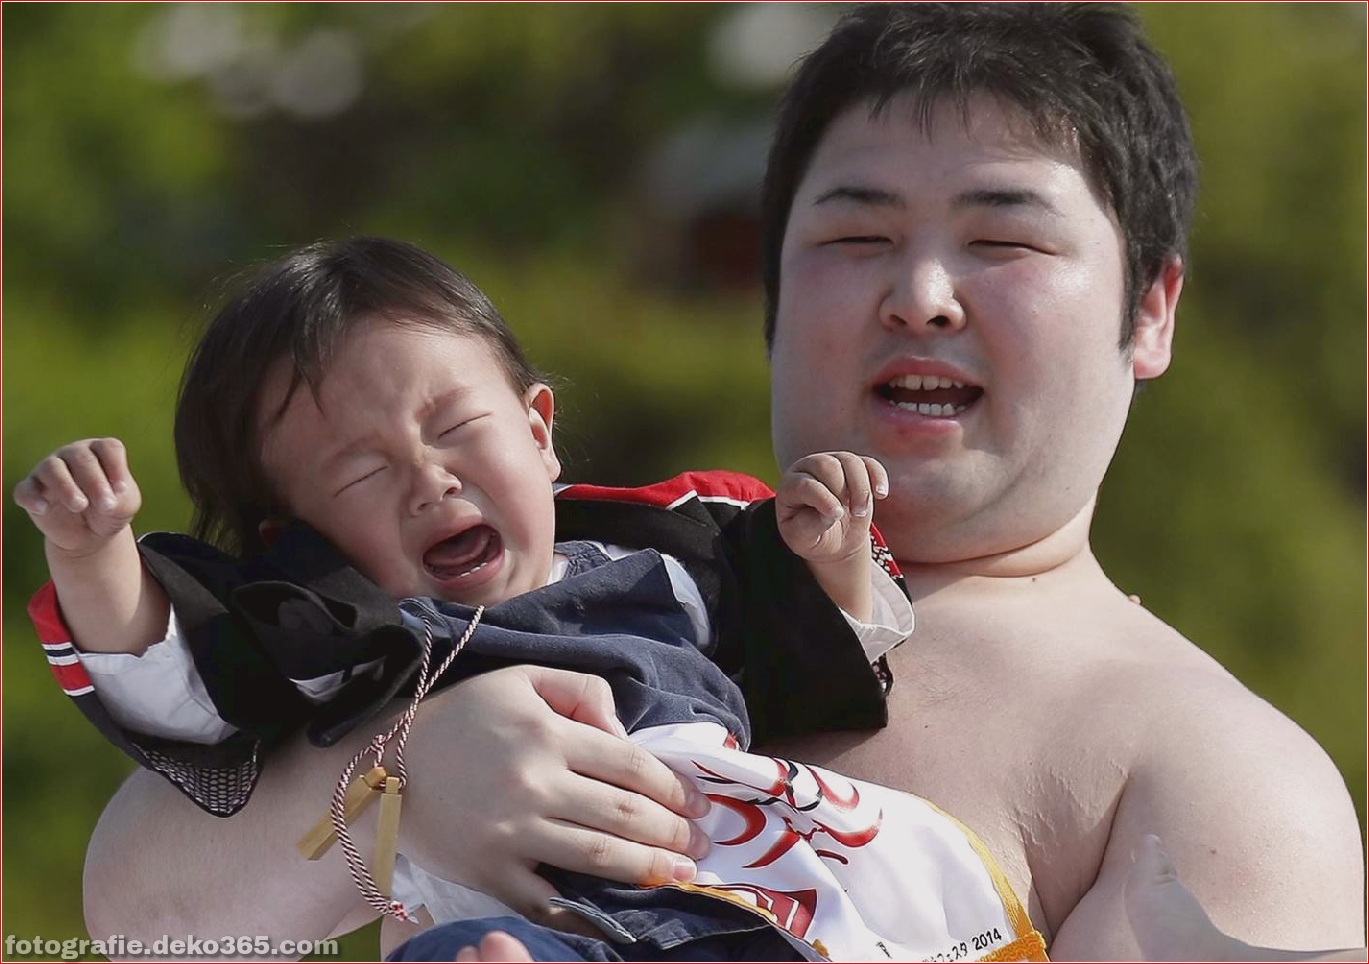 Sensoji-Tempelfestival für Babys, die in Tokio weinen_5c900813dea86.jpg